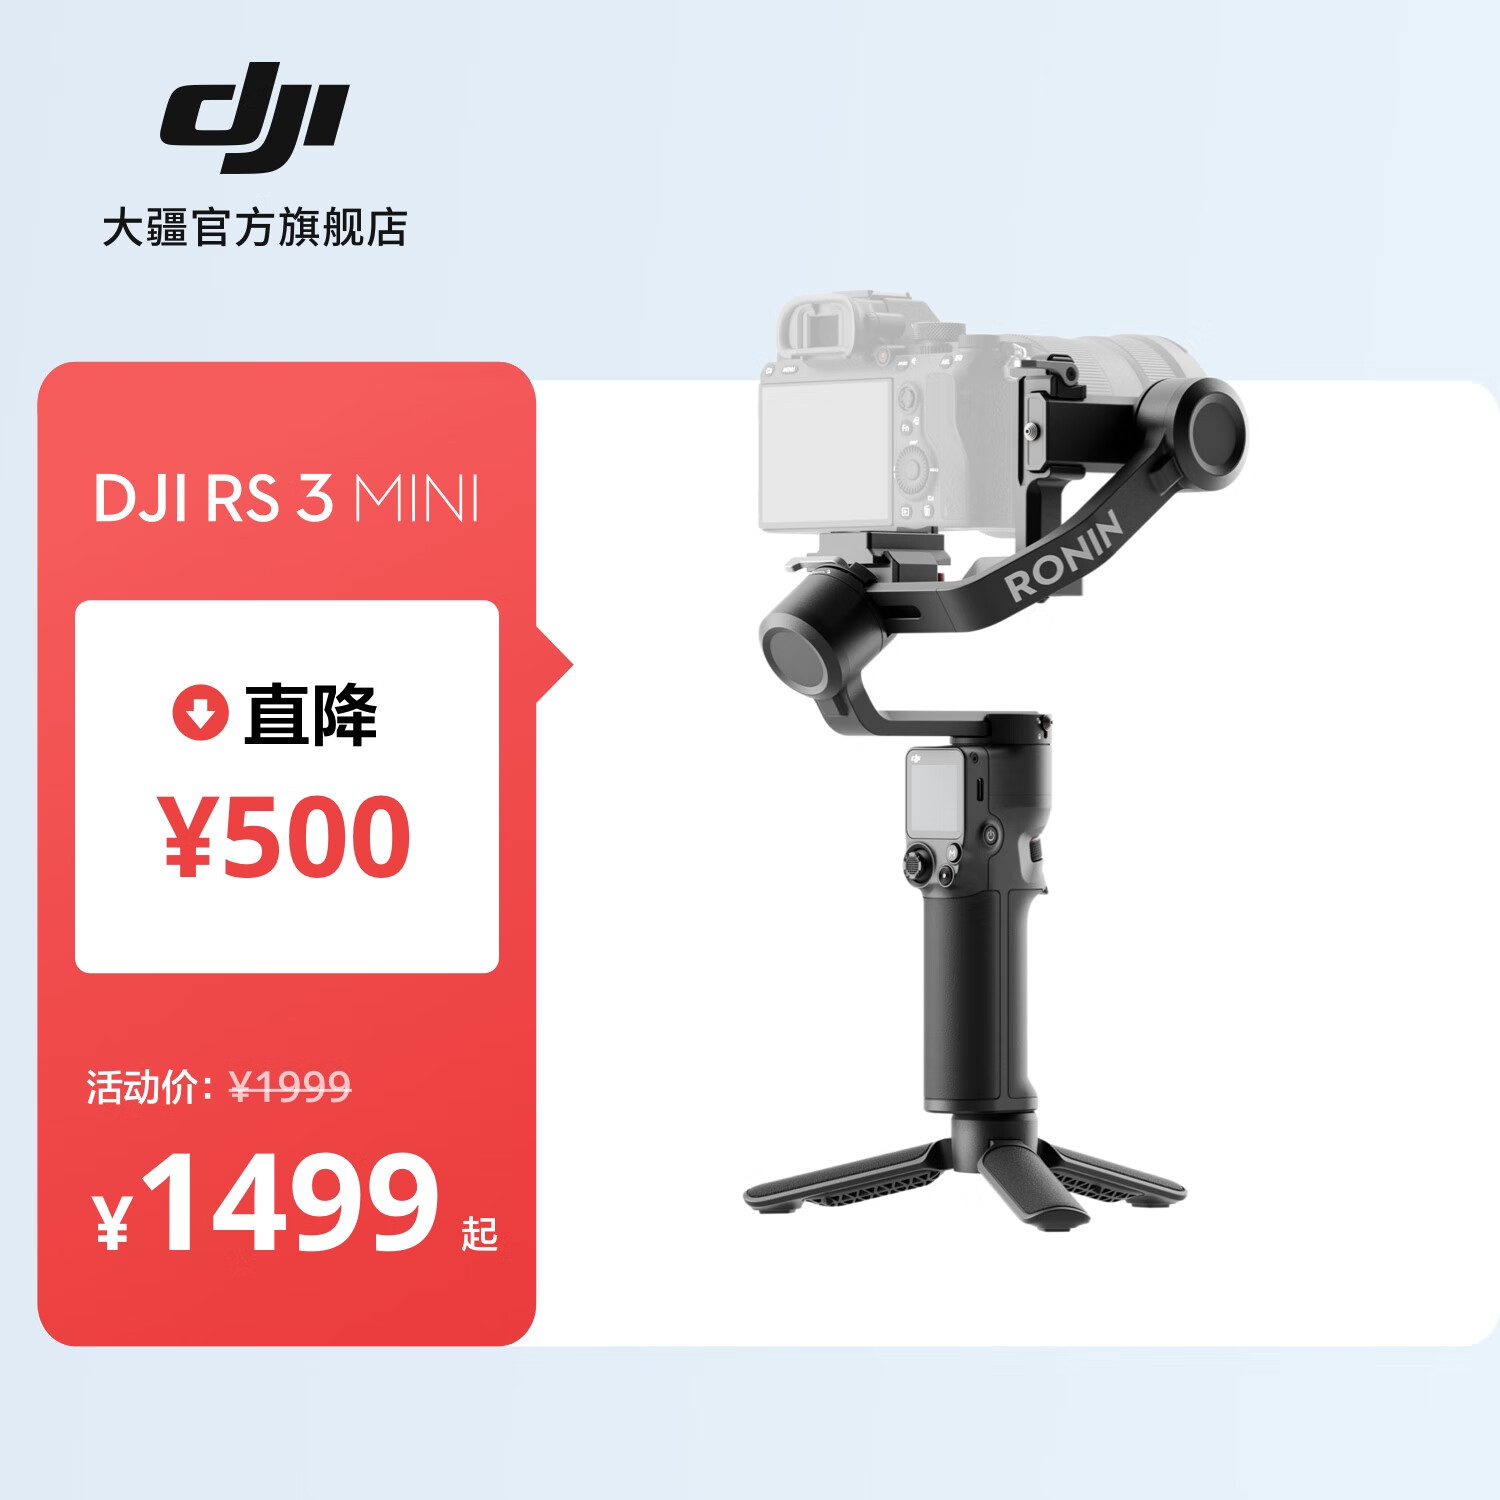 大疆 DJI RS 3 Mini 如影微单稳定器手持云台 三轴防抖拍摄 单反相机智能云台 标准版 官方标配